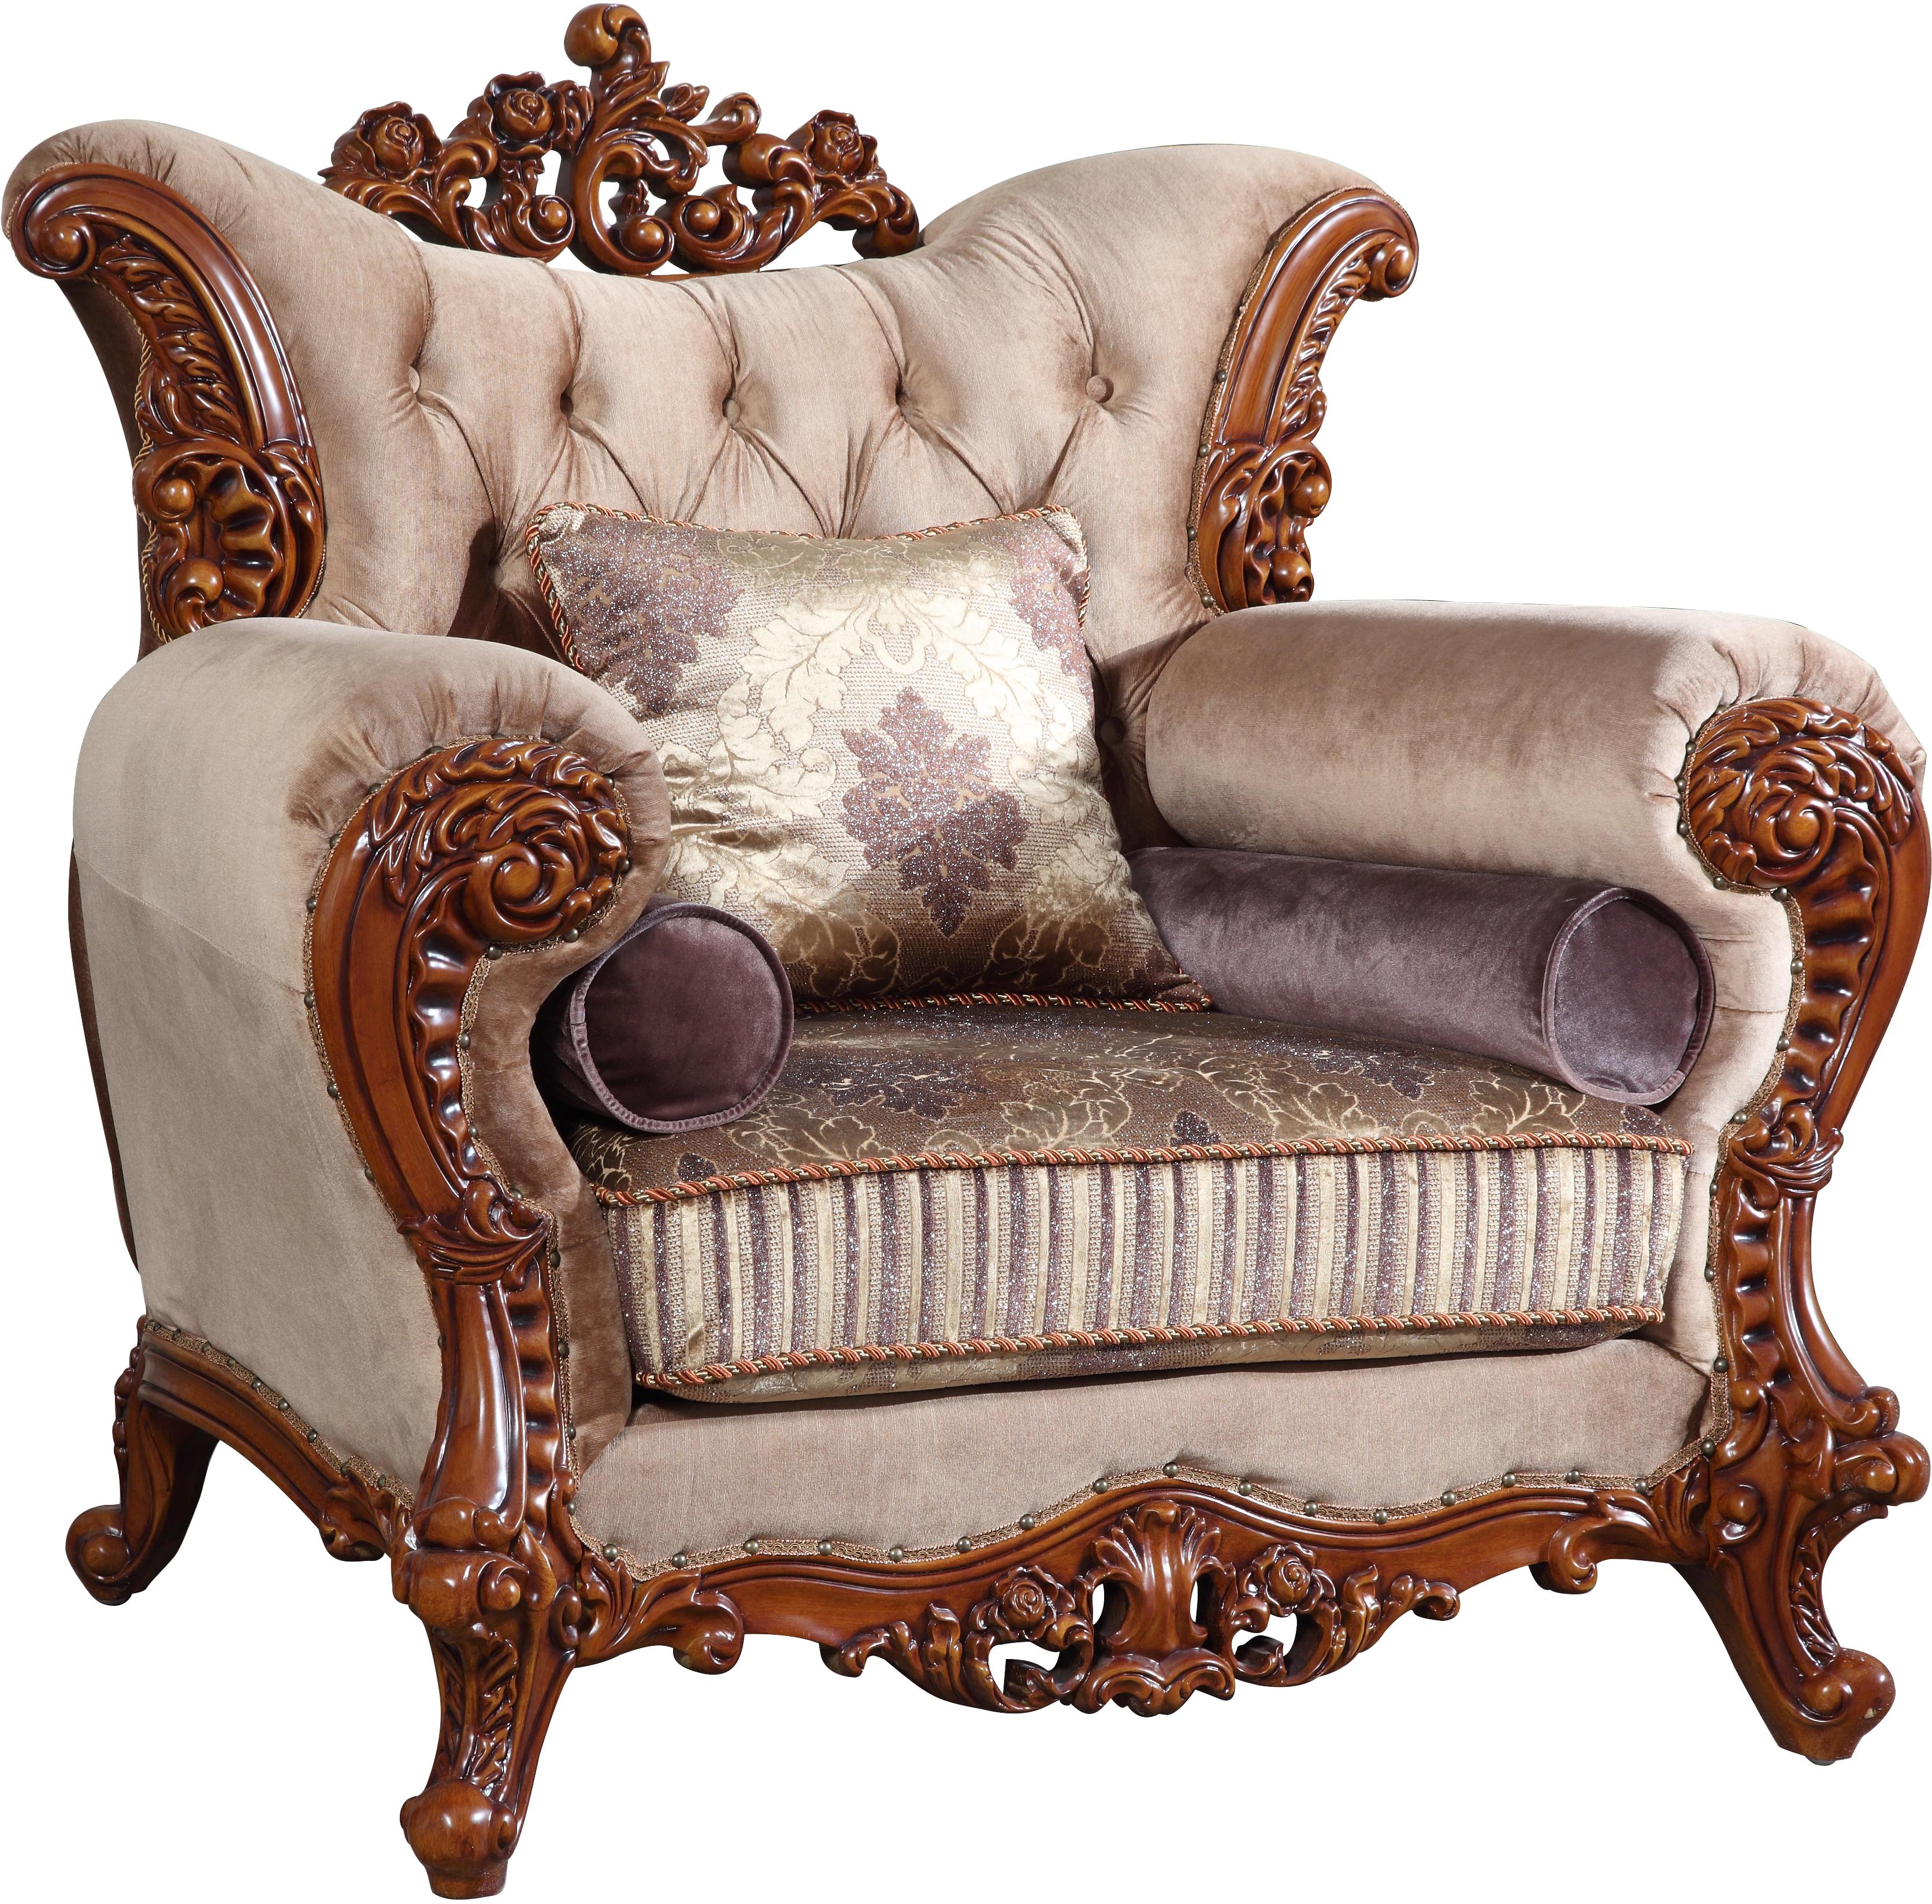 

    
Meridian Furniture 605 Bordeaux Sofa Loveseat and Chair Set Rich Cherry Finish 605-Bordeaux-Beige-Set-3
